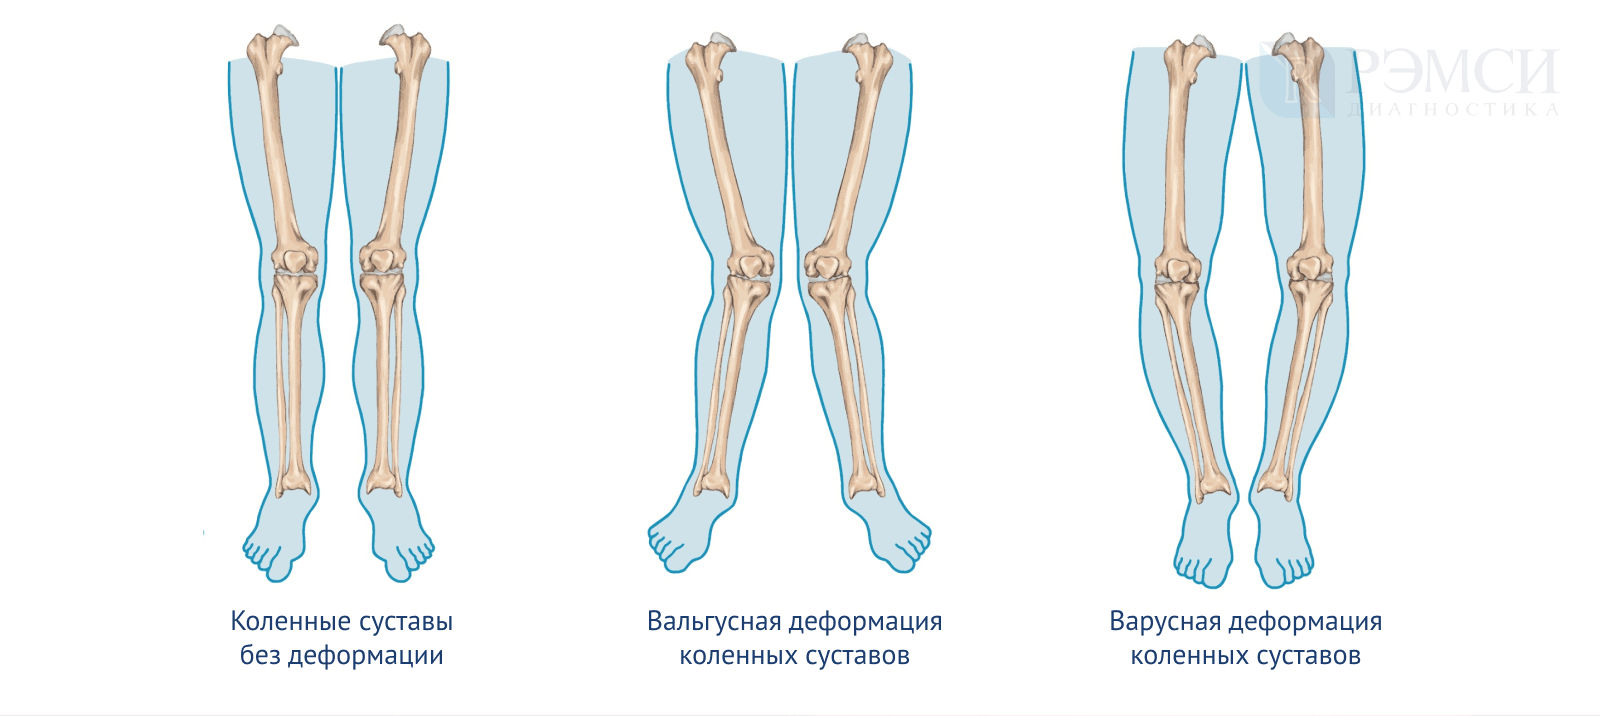 Какая нога. Варусная деформация оси нижних конечностей. Варусная деформация коленных суставов рентген. Сгибательная и вальгусная деформация коленных суставов. Варусная и вальгусная деформация коленного сустава.